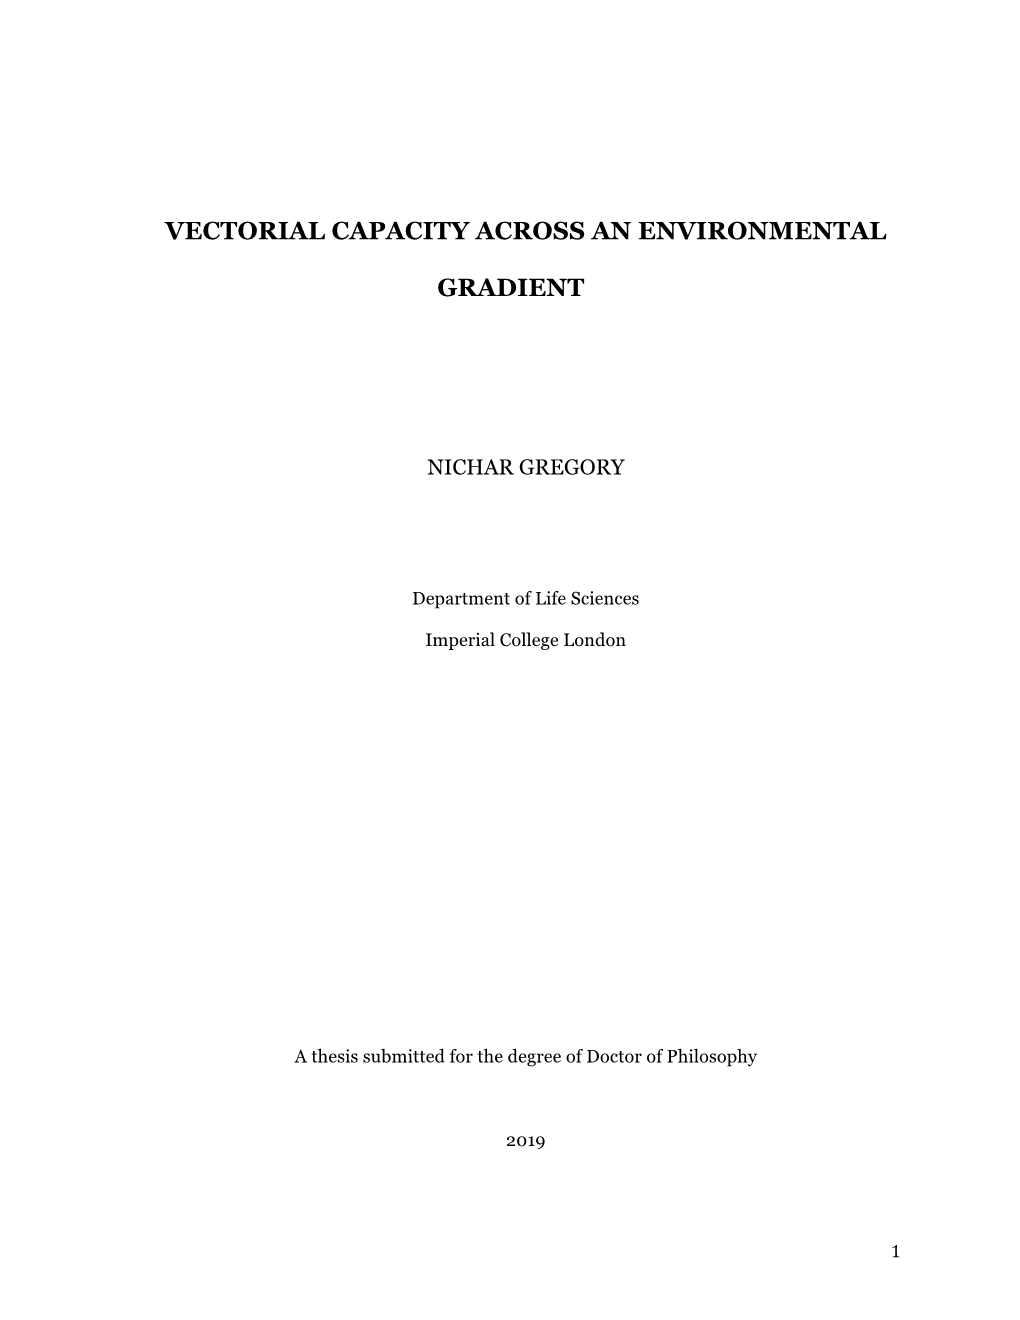 Vectorial Capacity Across an Environmental